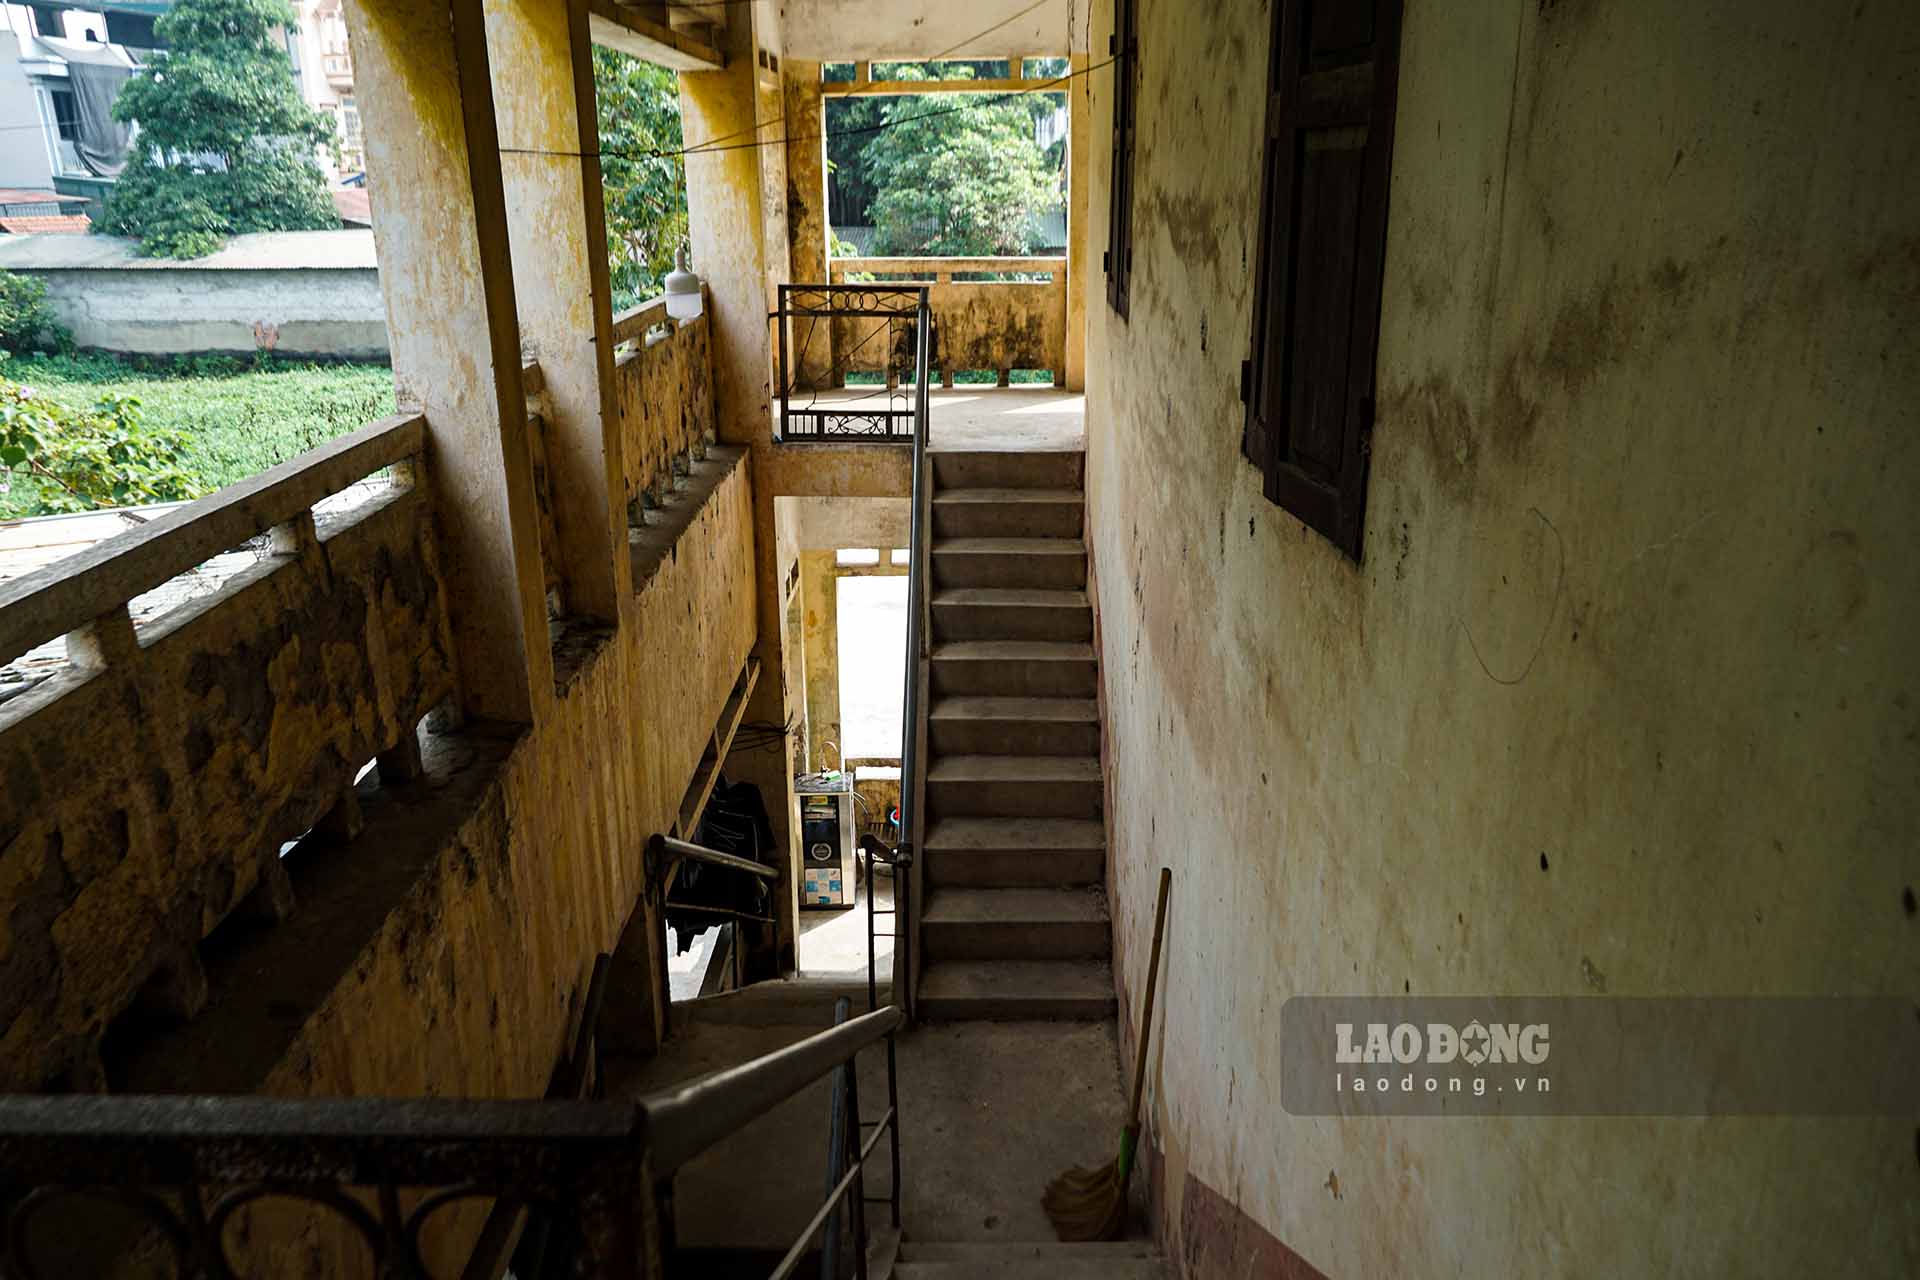 Theo ghi nhận của Lao Động, khu dịch vụ Hợp tác xã Nông nghiệp của xã Đồng Quang – nơi các hộ dân đang ở tạm trước đây từng là một cơ quan cũ của xã này và đã được xây dựng từ nhiều năm về trước.